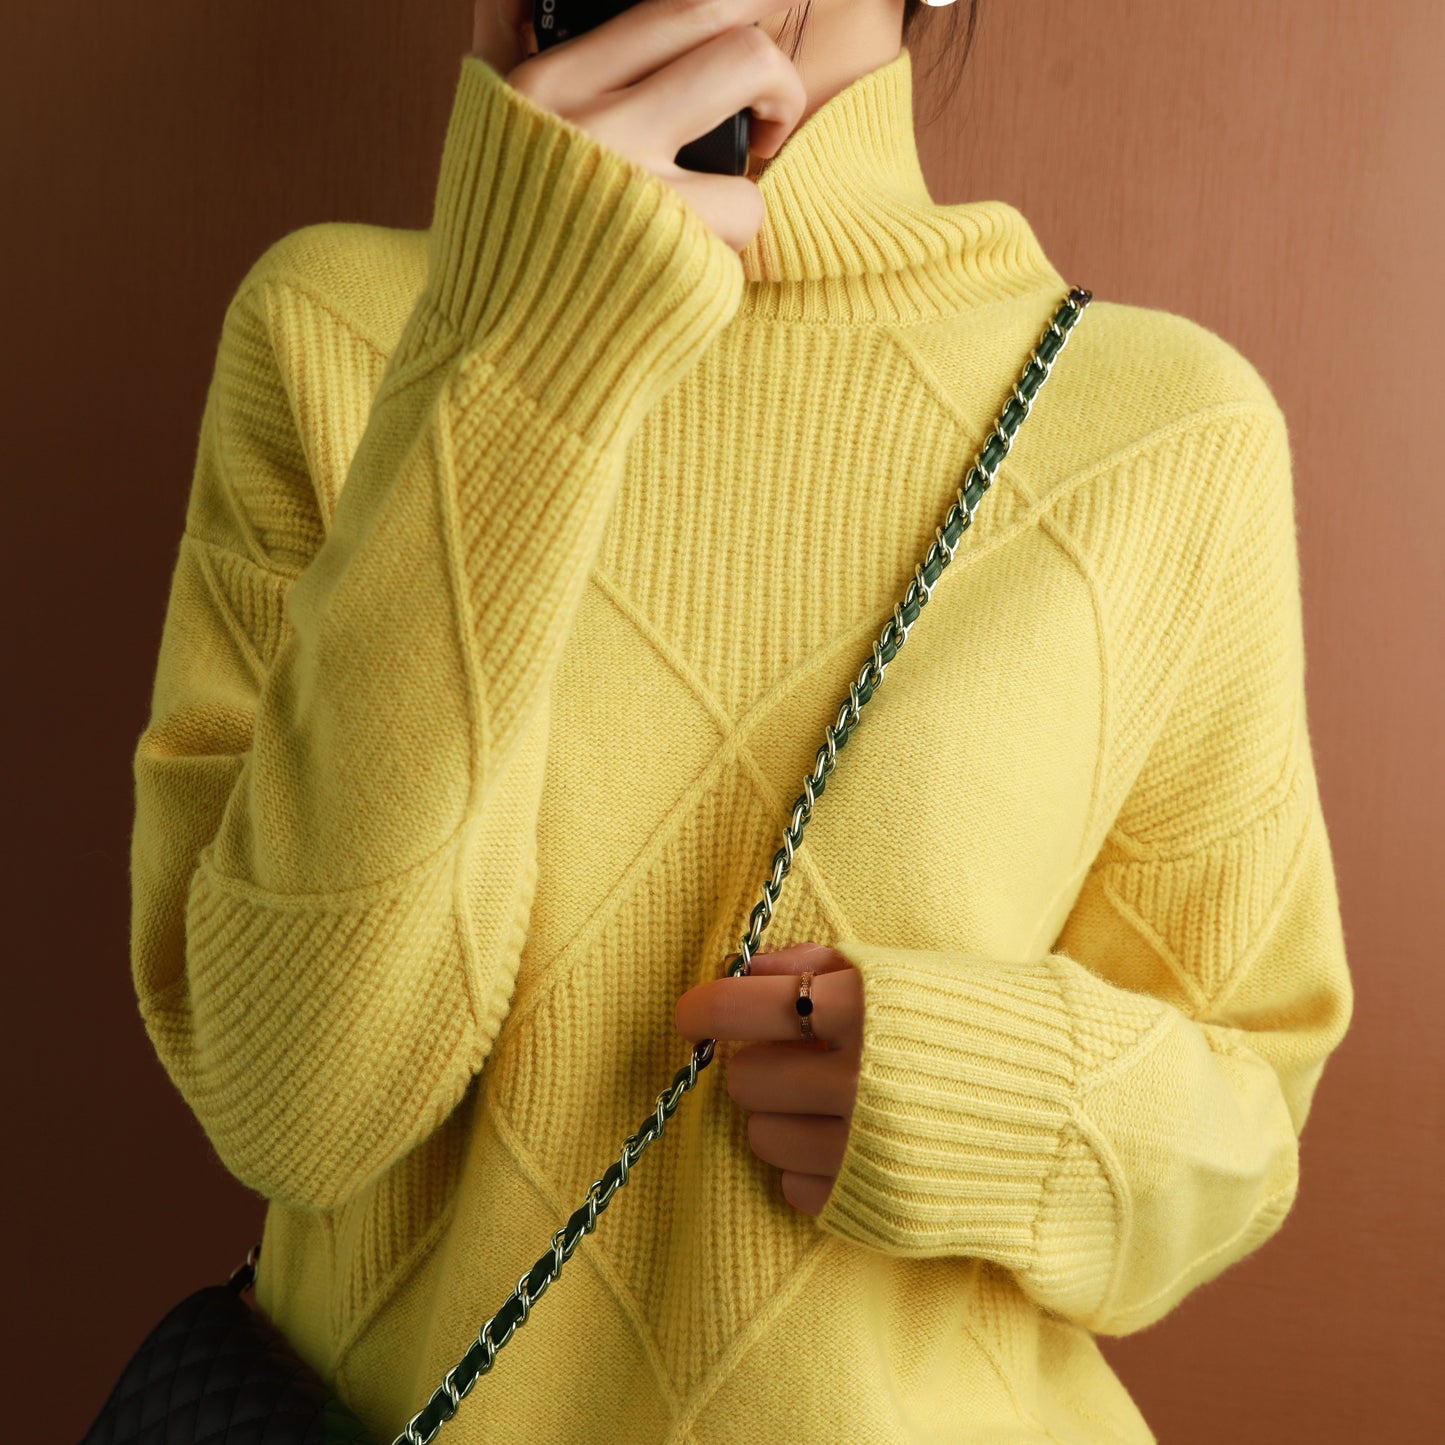 MIMA - Cashmere Turtleneck Sweater (60% OFF)